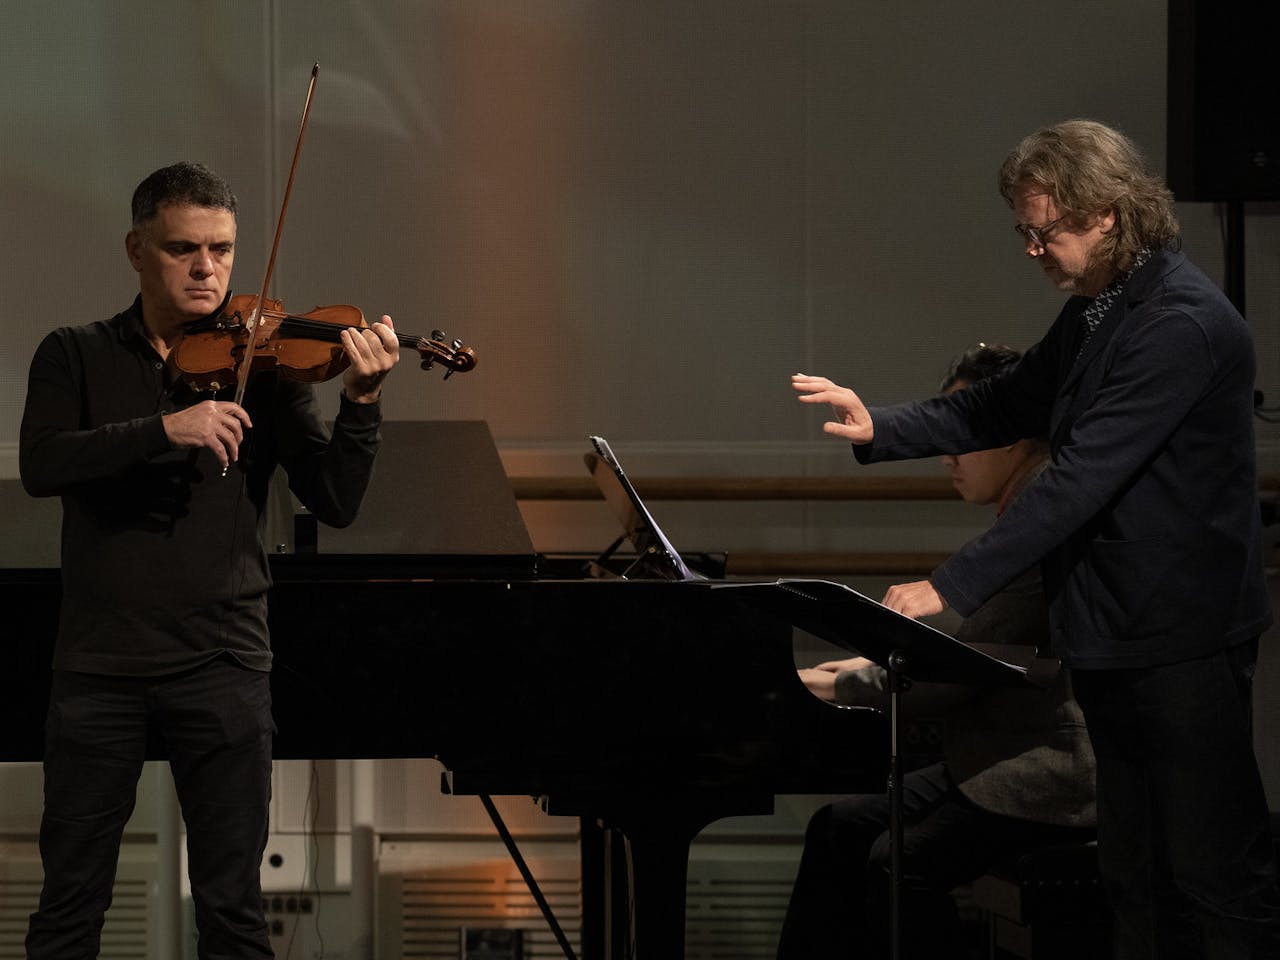 Koen conducting Vasily Vassilev whilst stood at a Grand Piano